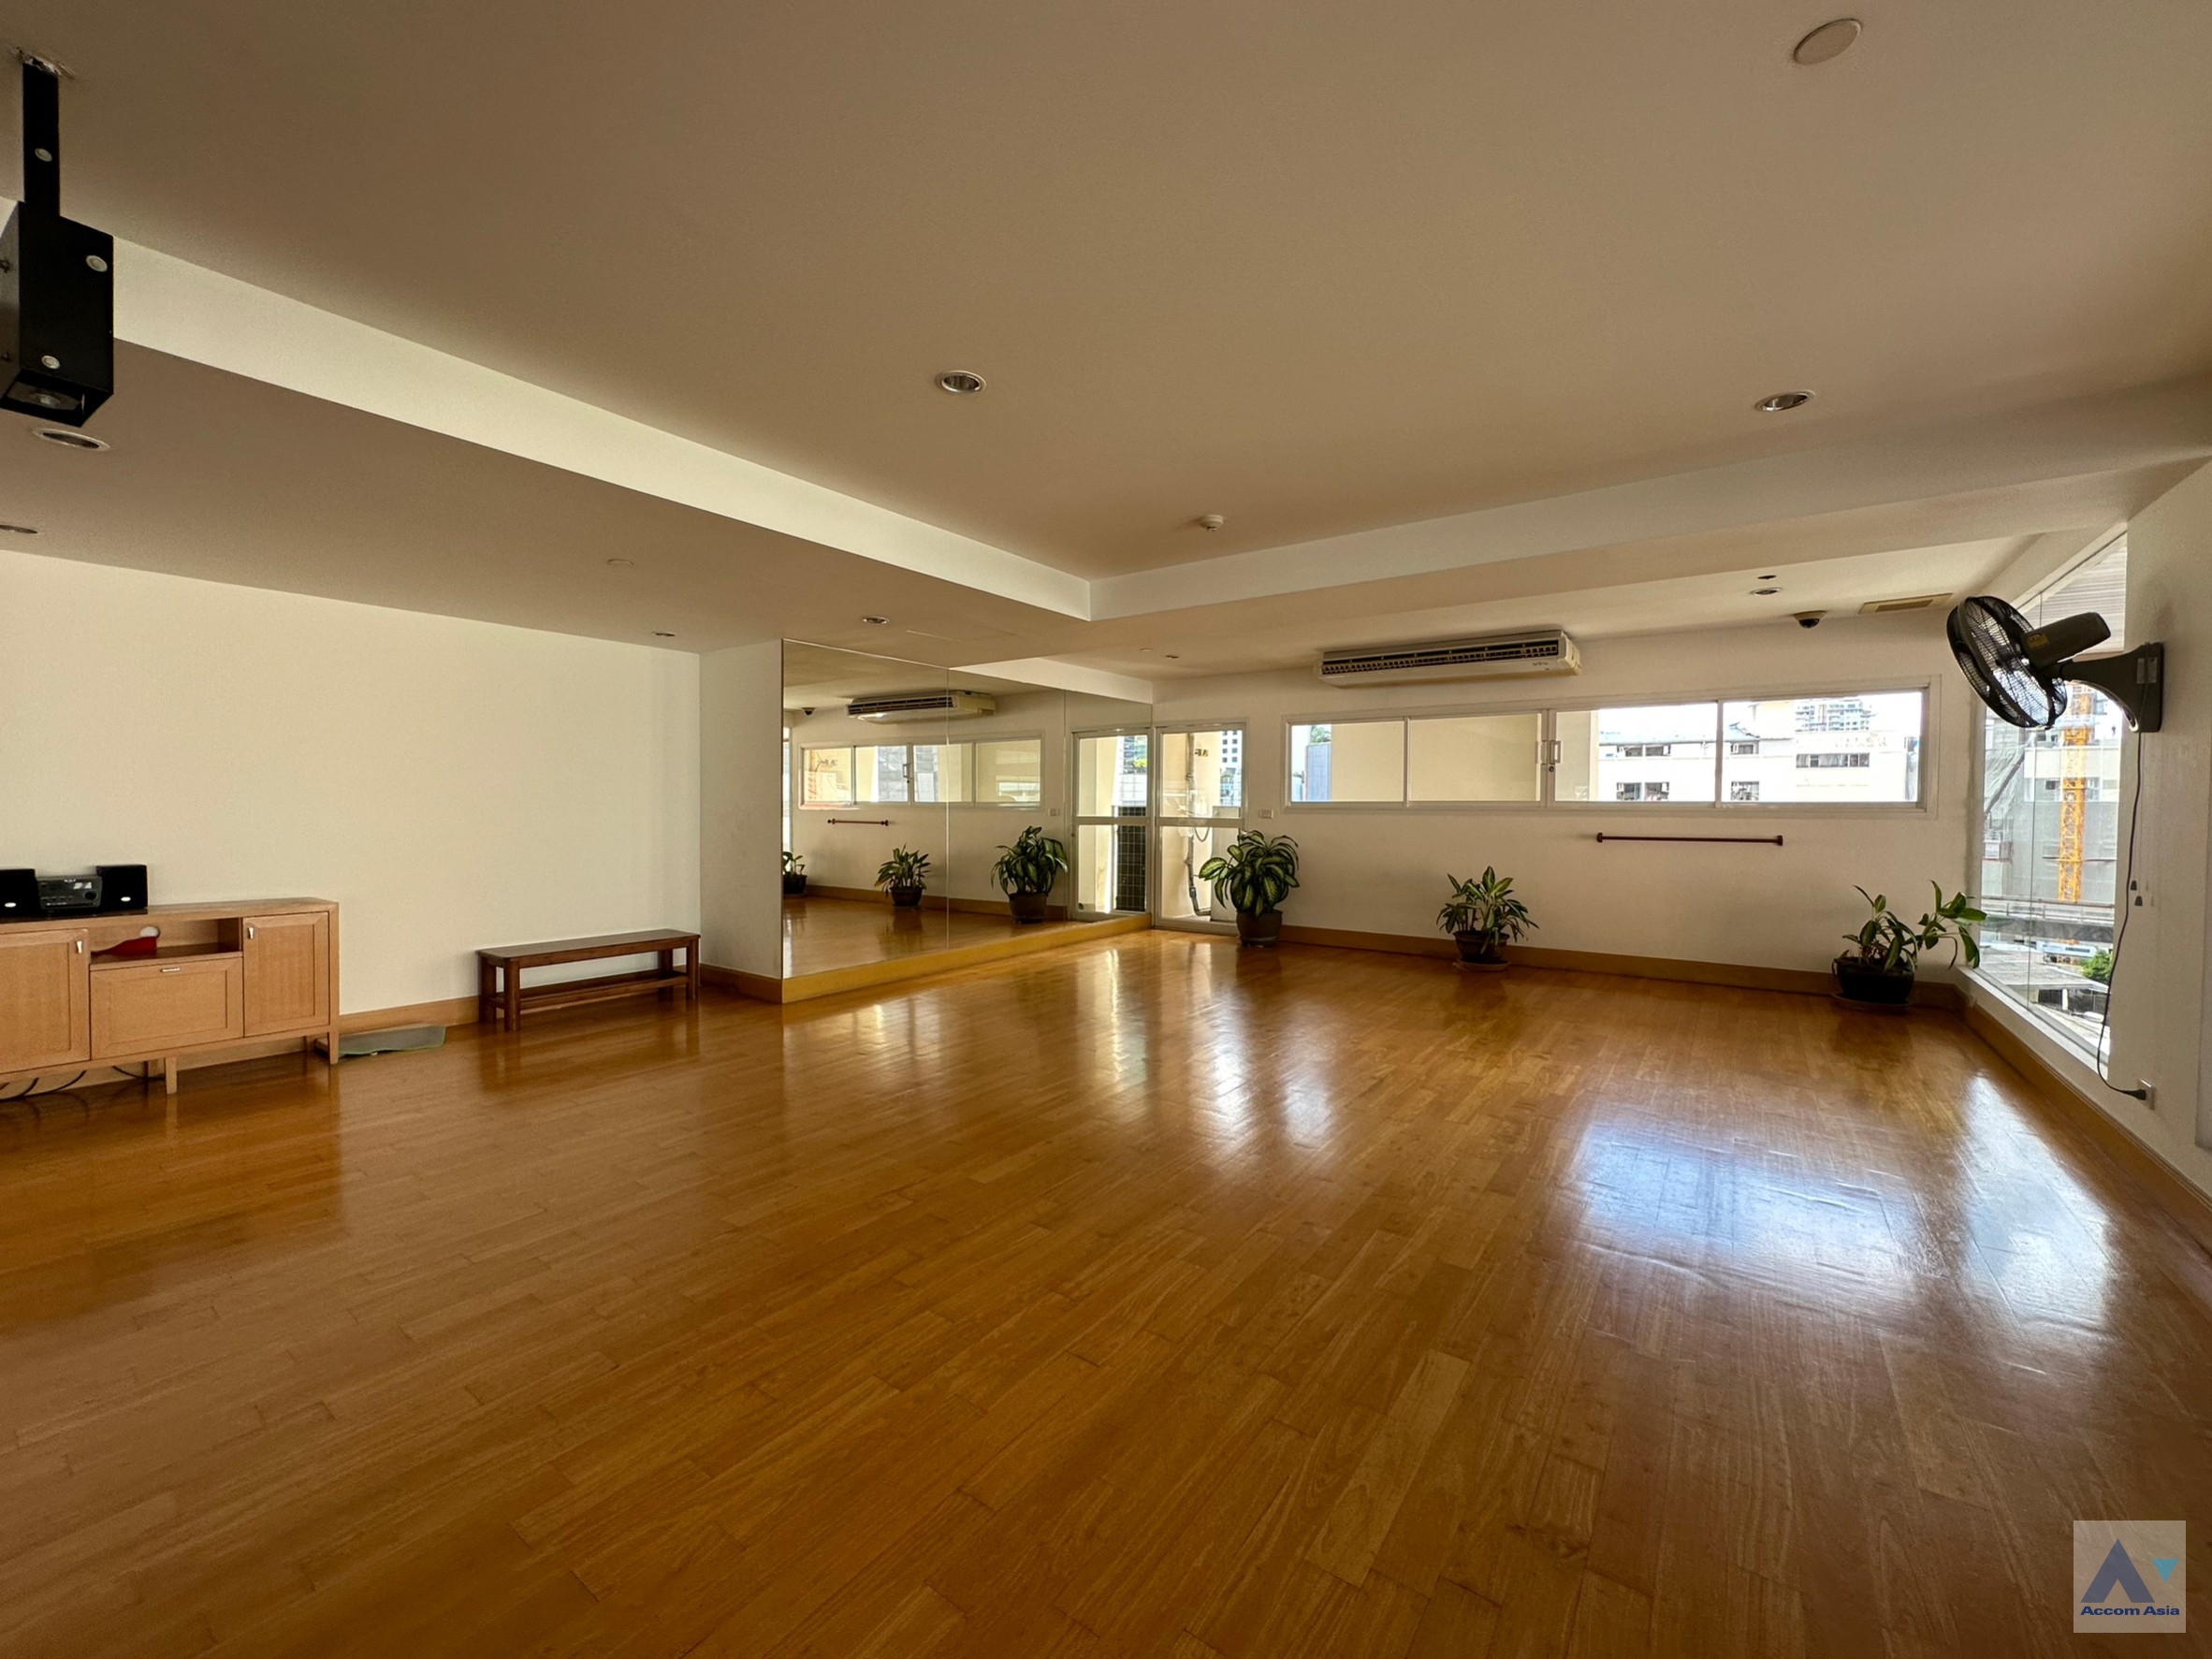 5 High-quality facility - Apartment - Sukhumvit - Bangkok / Accomasia